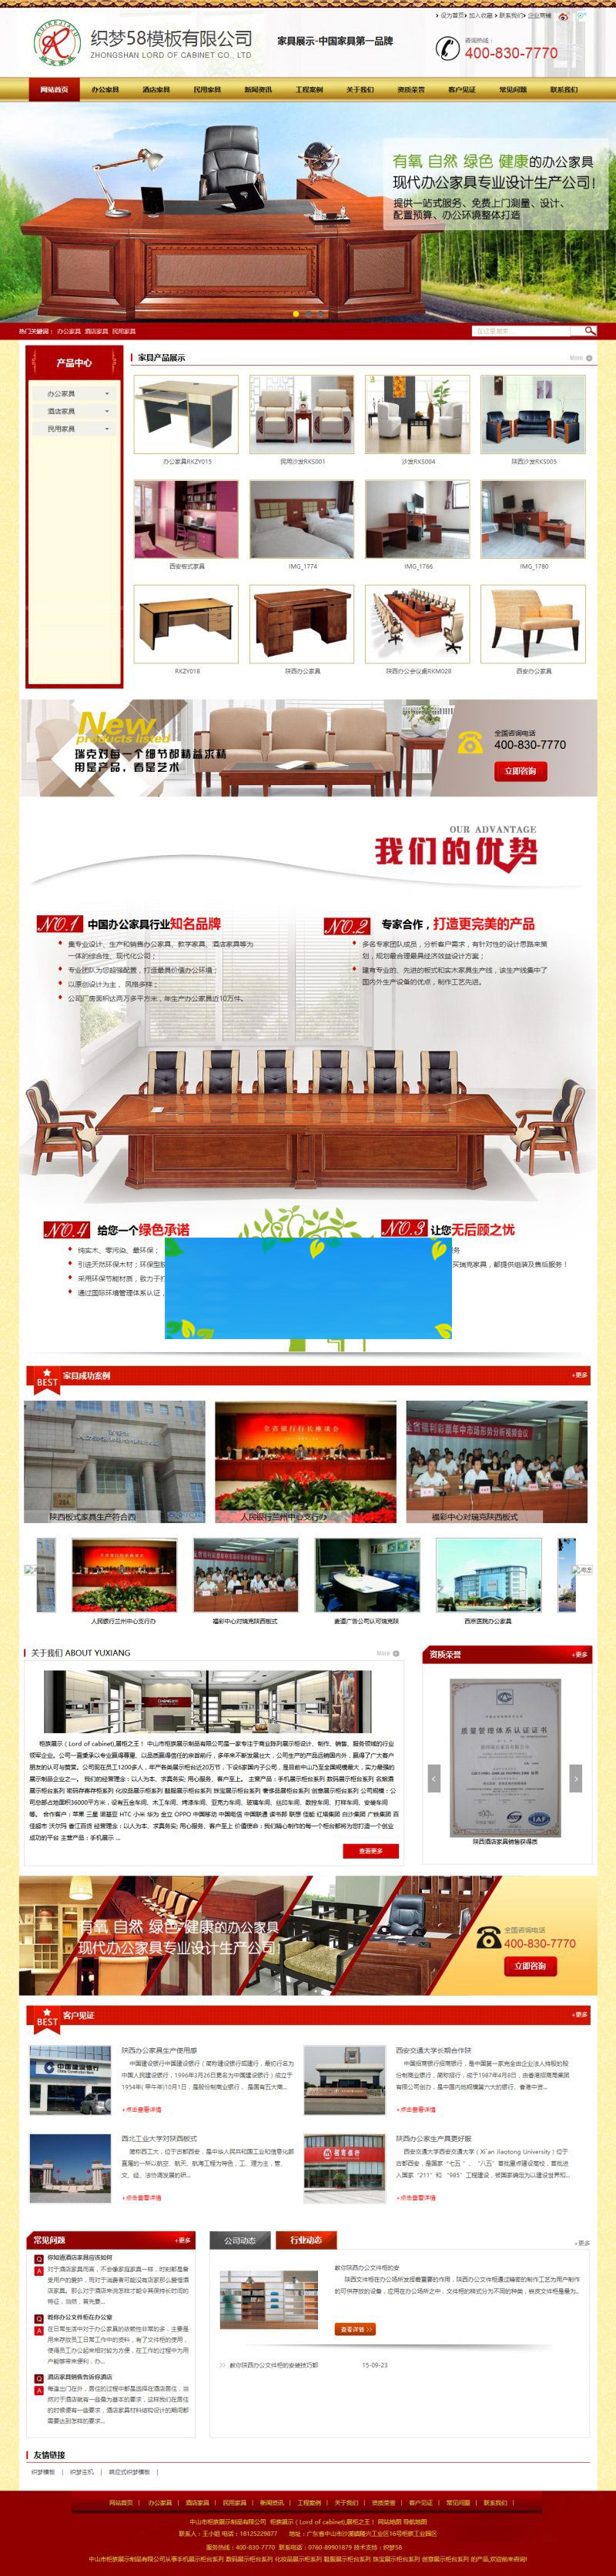 织梦dedecms营销型家具产品销售企业网站模板-何以博客